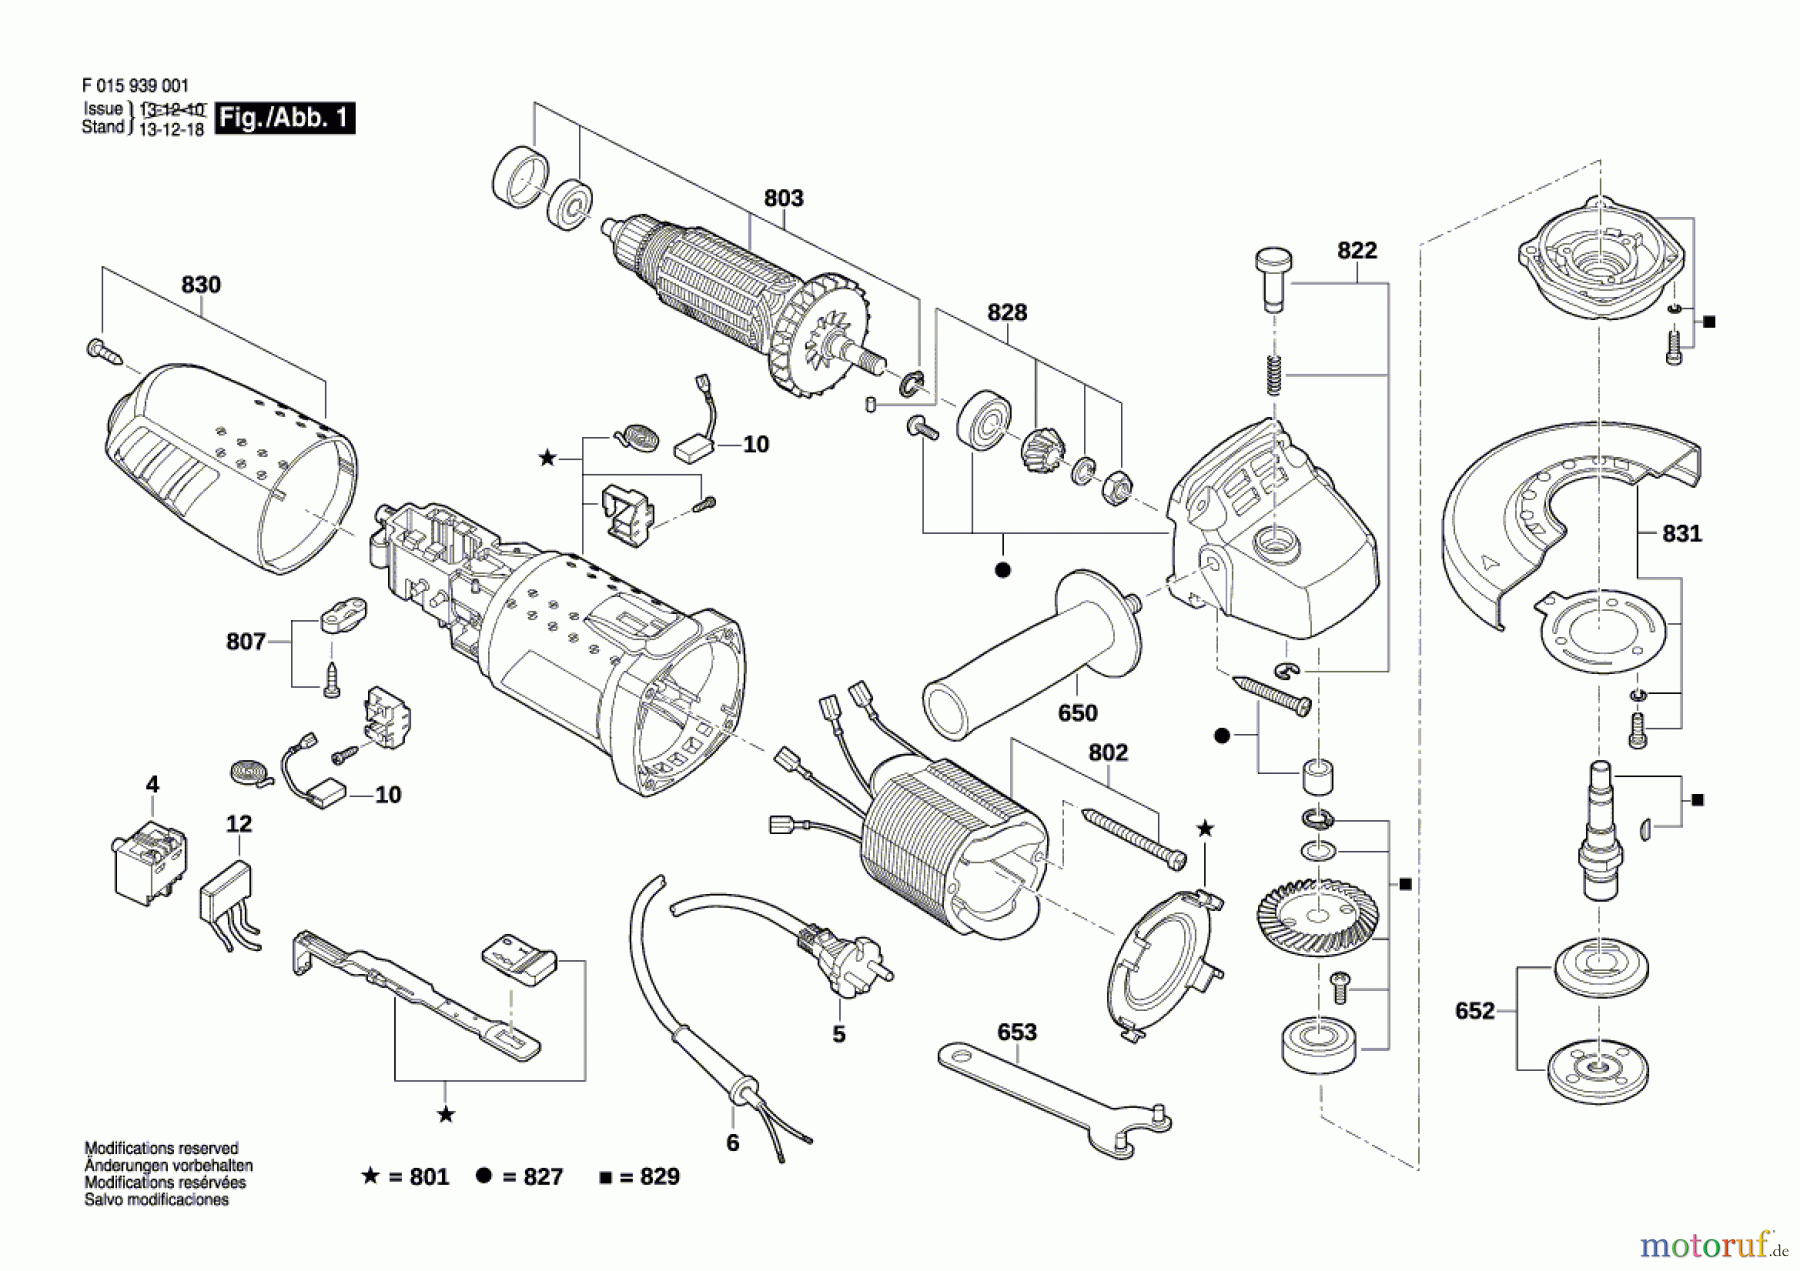  Bosch Werkzeug Pw-Winkelschleifer 9390 Seite 1